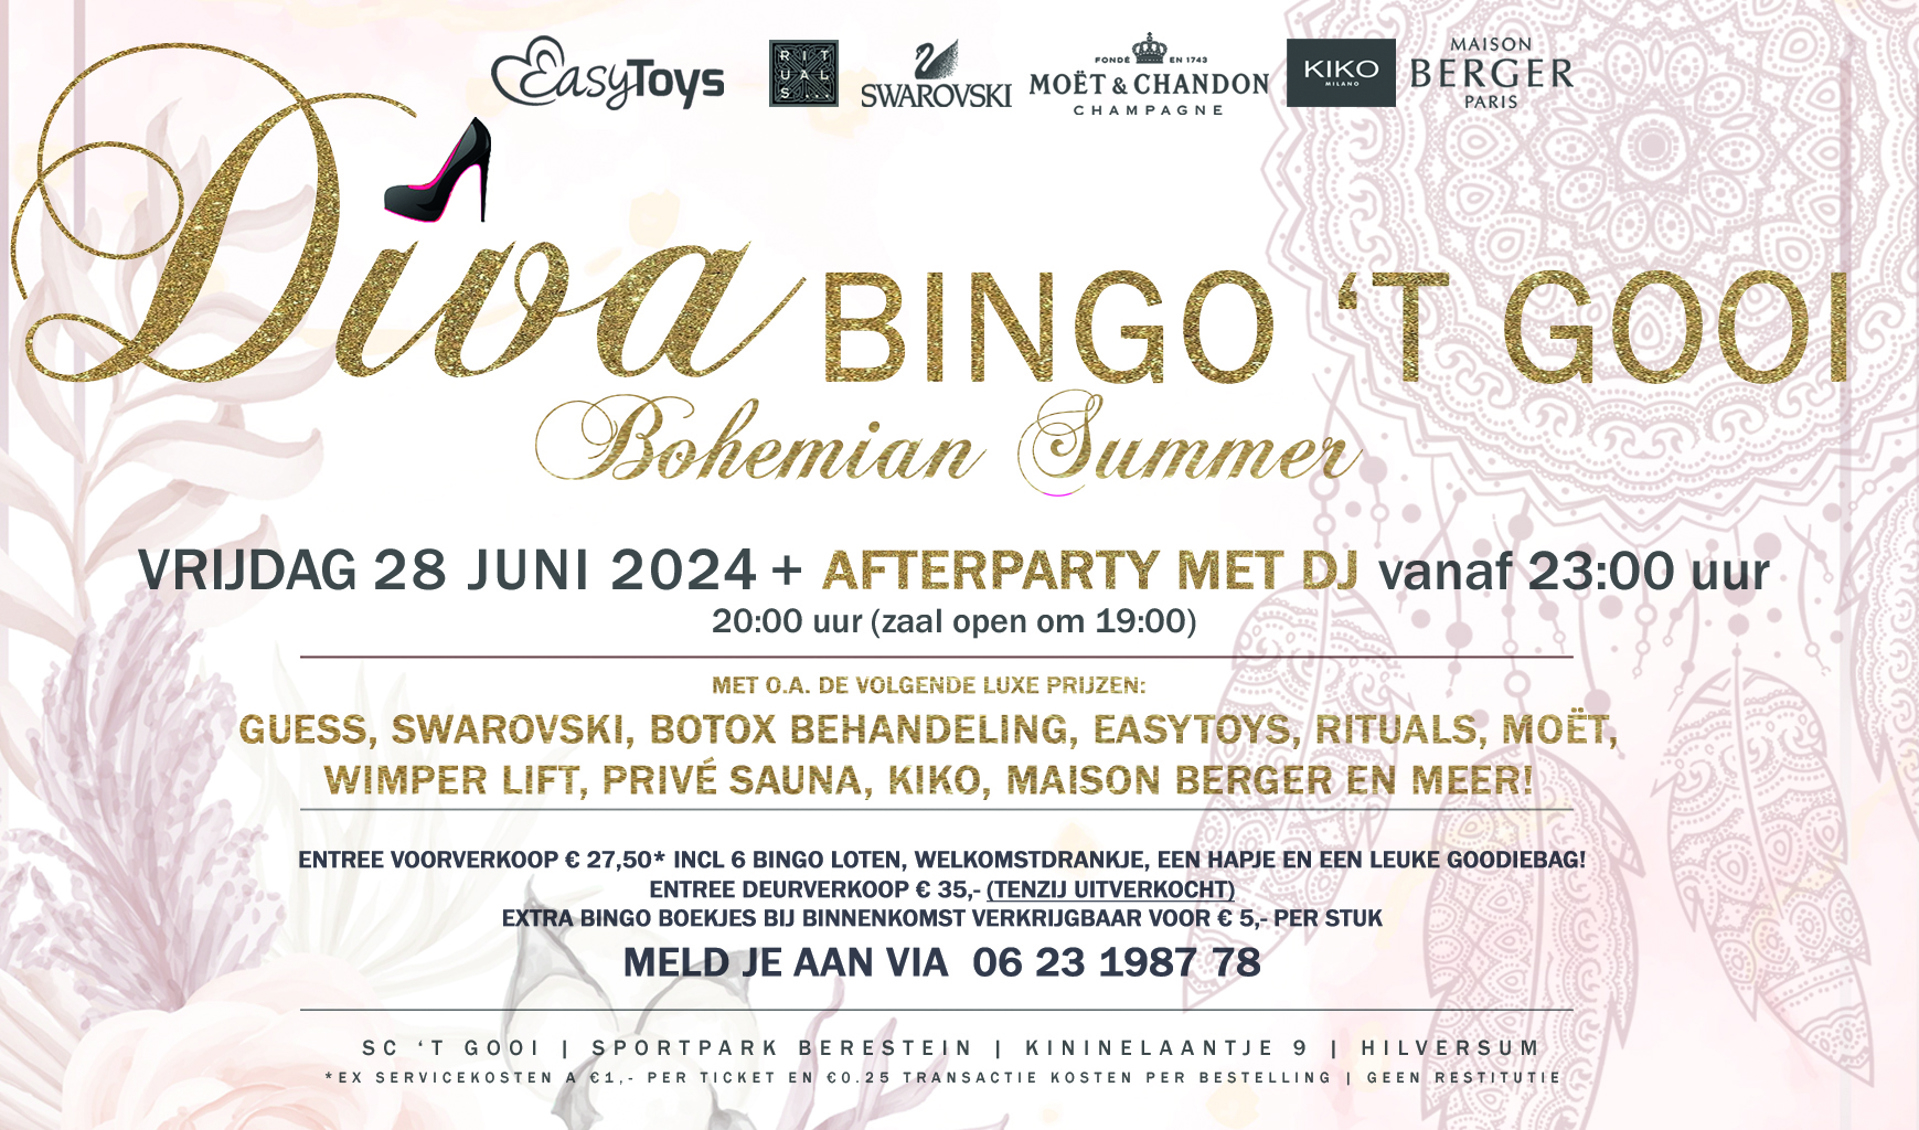 Diva Bingo 't Gooi - Bohemian Summer